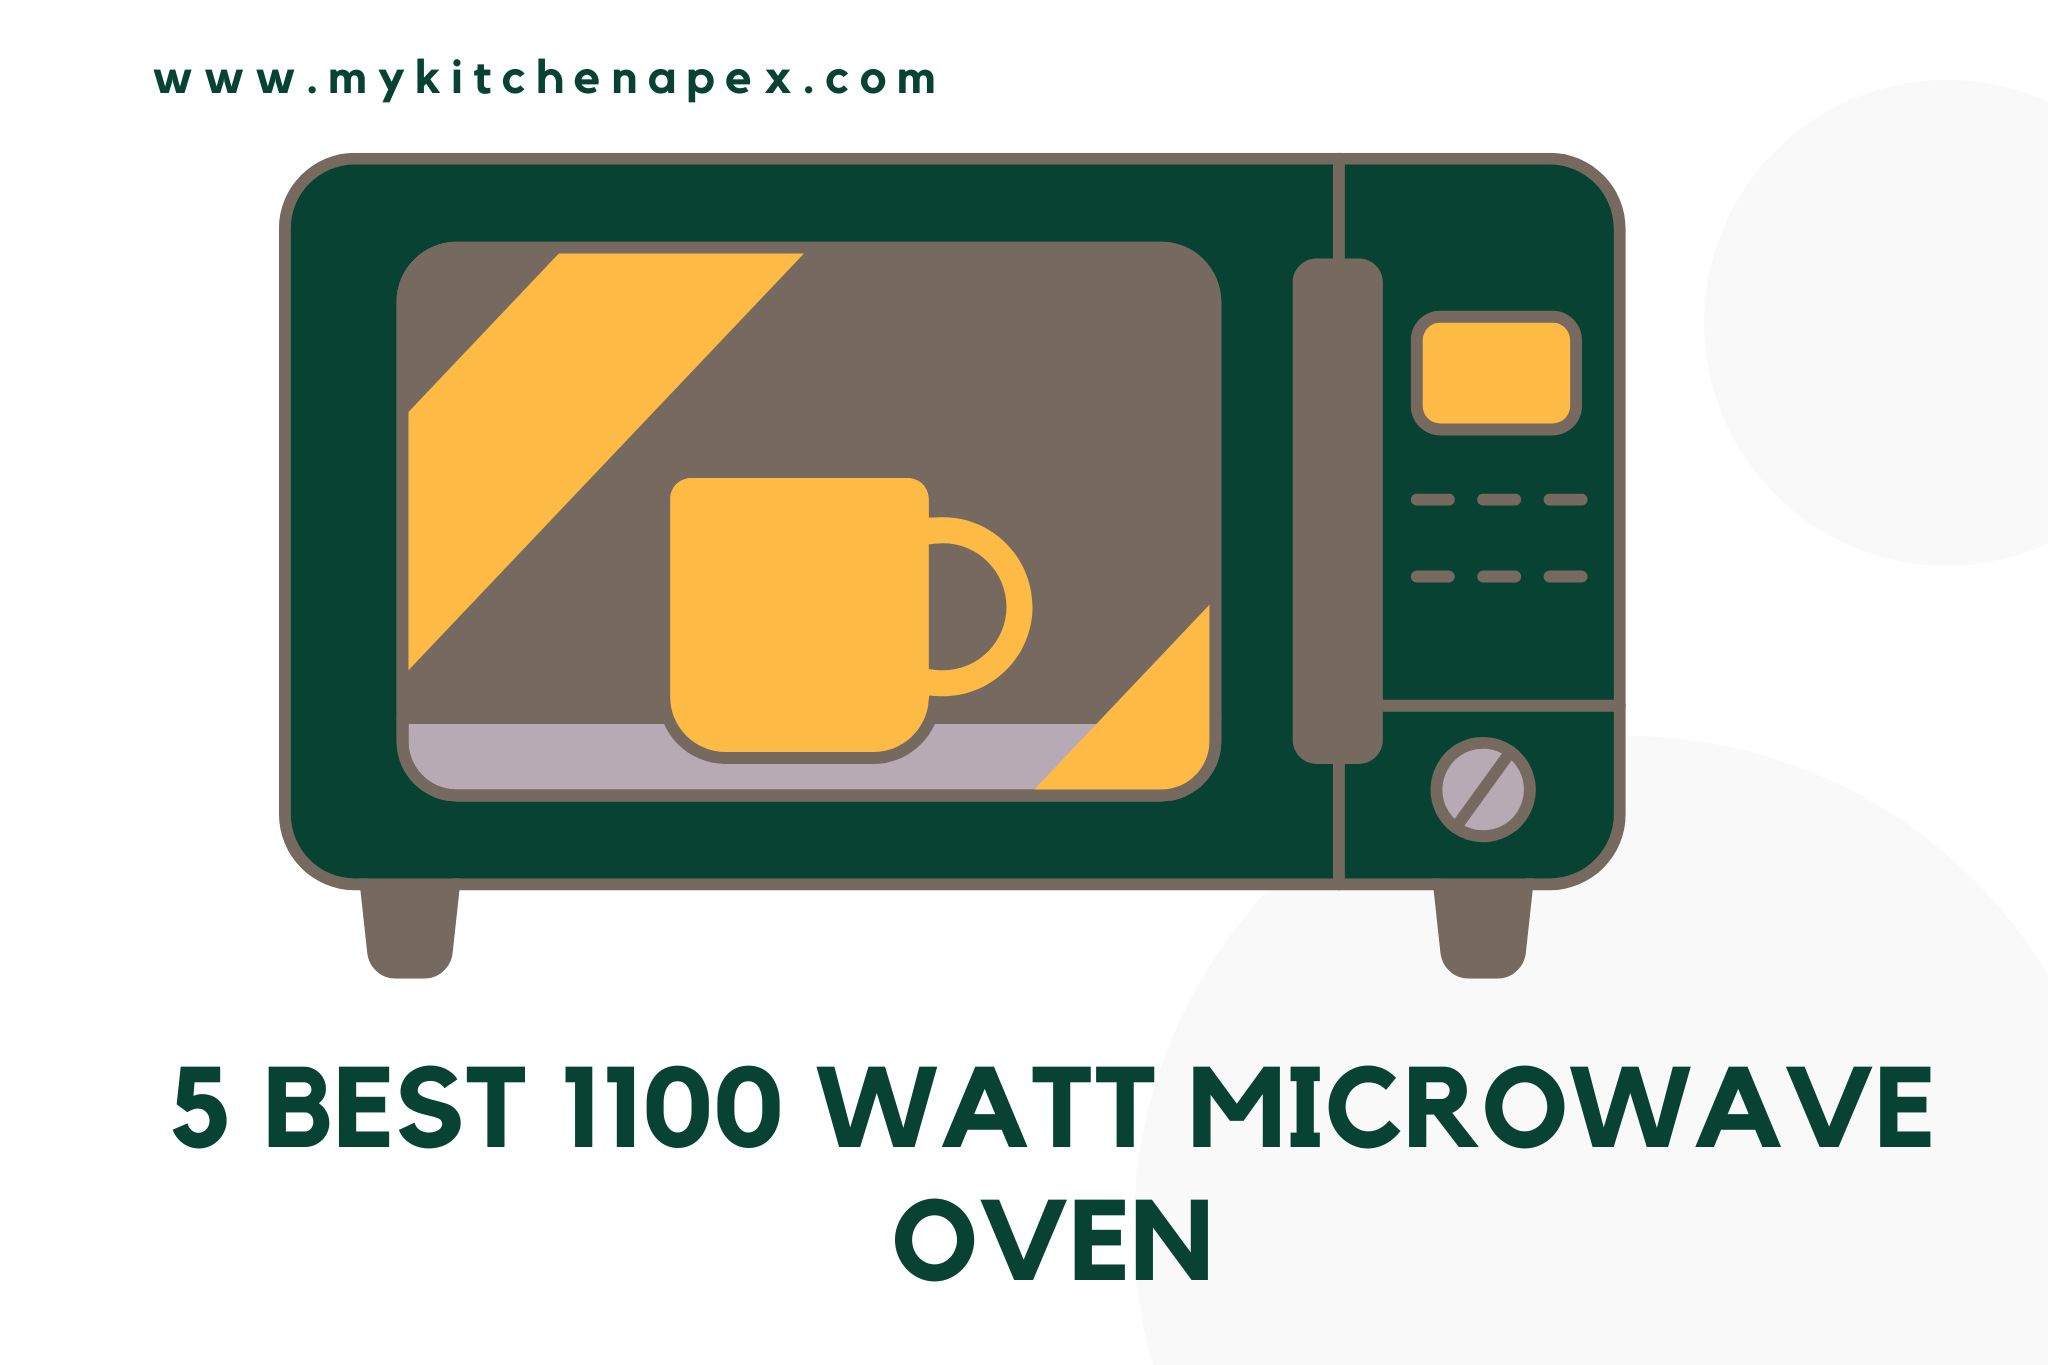 Best 1100 Watt Microwave Oven